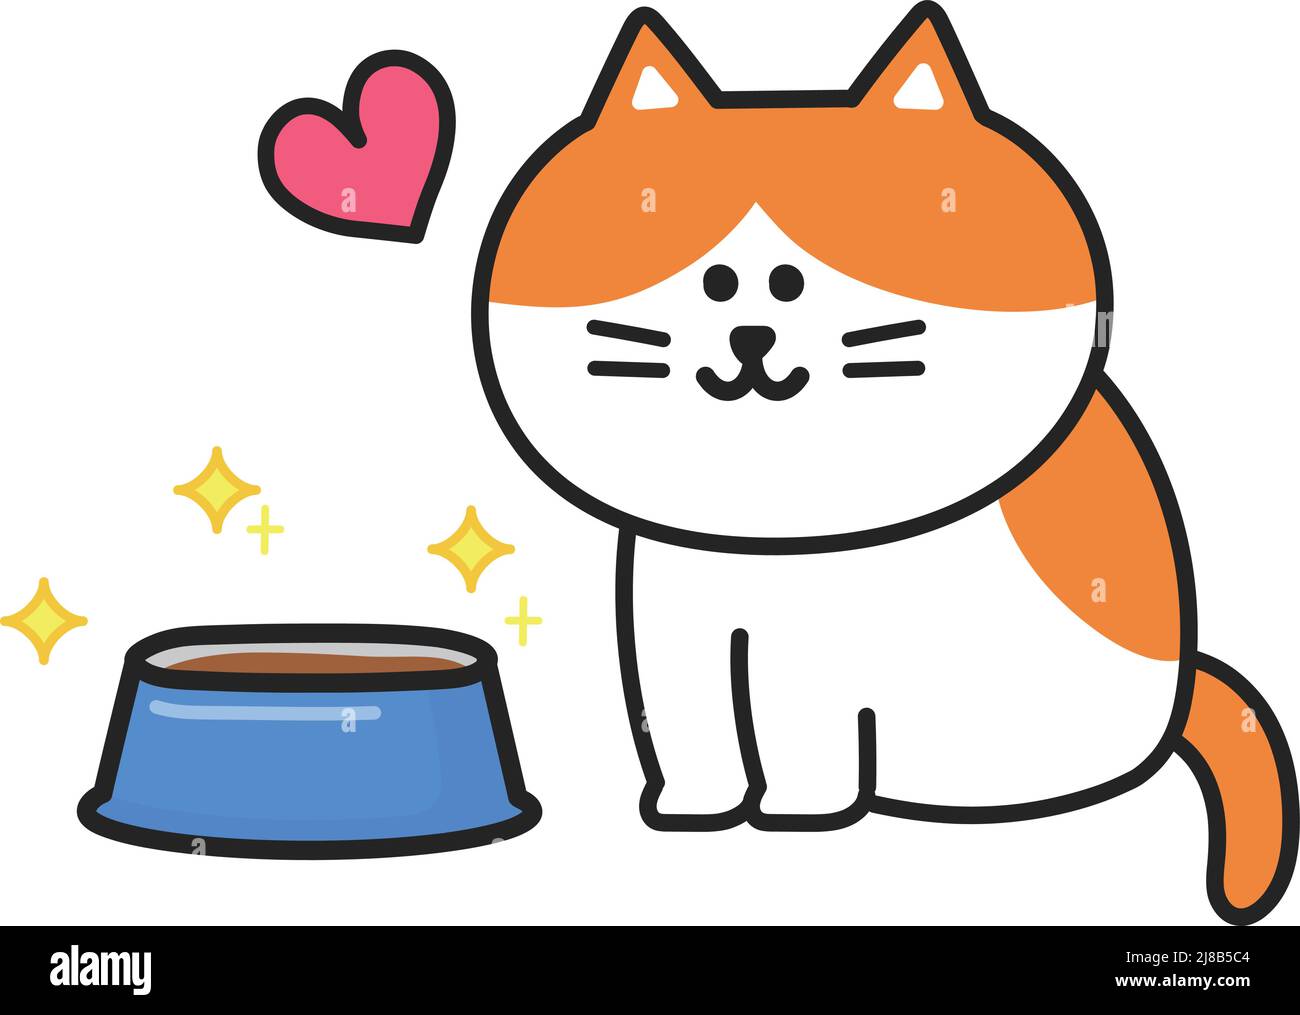 Orange Tabby Katze freute sich, köstliches Essen in der Schüssel zu sehen, Vektor-Illustration. Stock Vektor